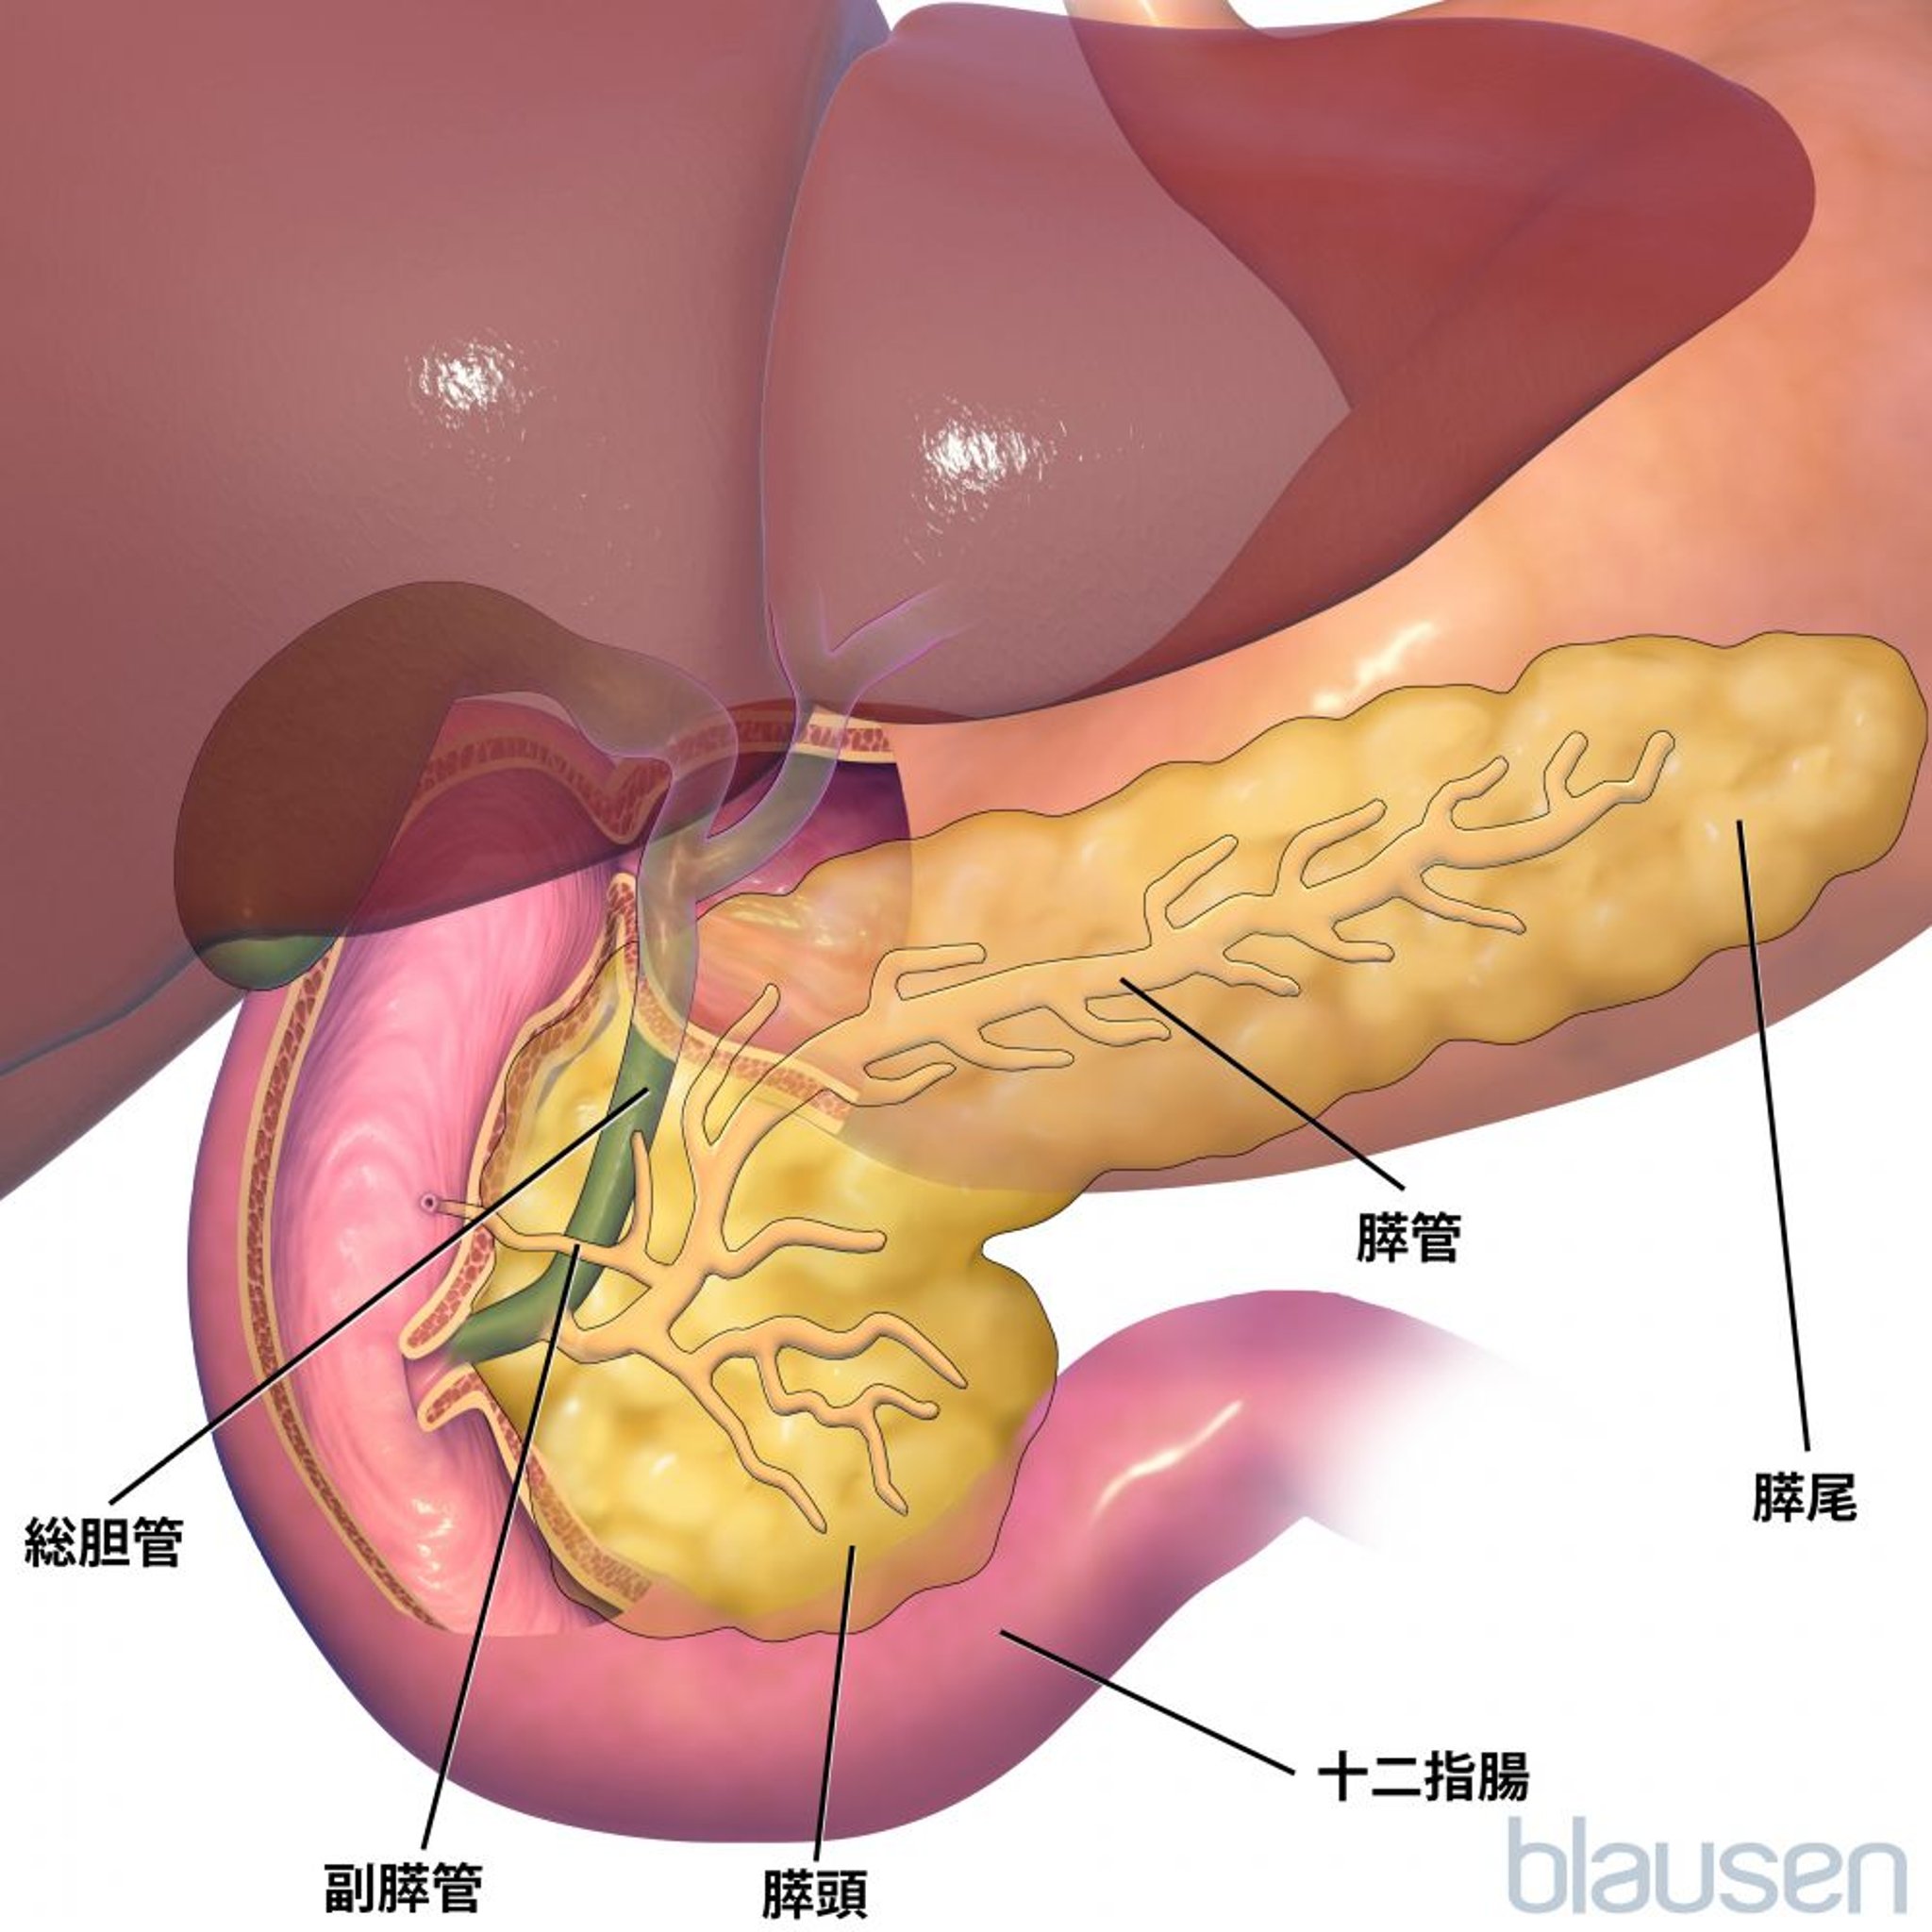 膵臓の解剖学的構造